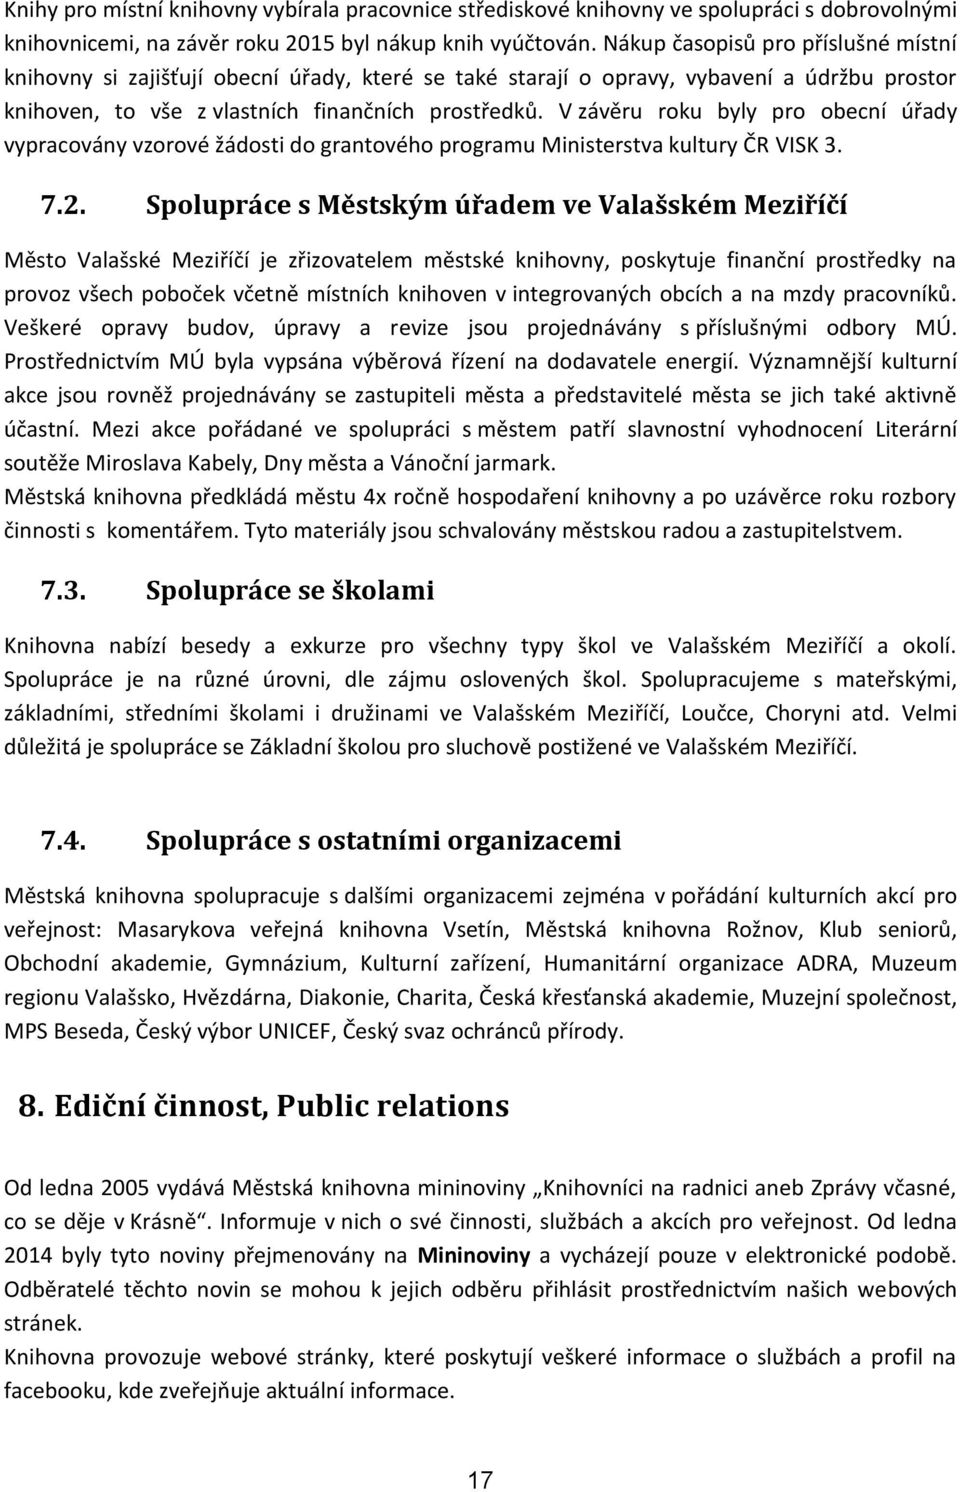 V závěru roku byly pro obecní úřady vypracovány vzorové žádosti do grantového programu Ministerstva kultury ČR VISK 3. 7.2.